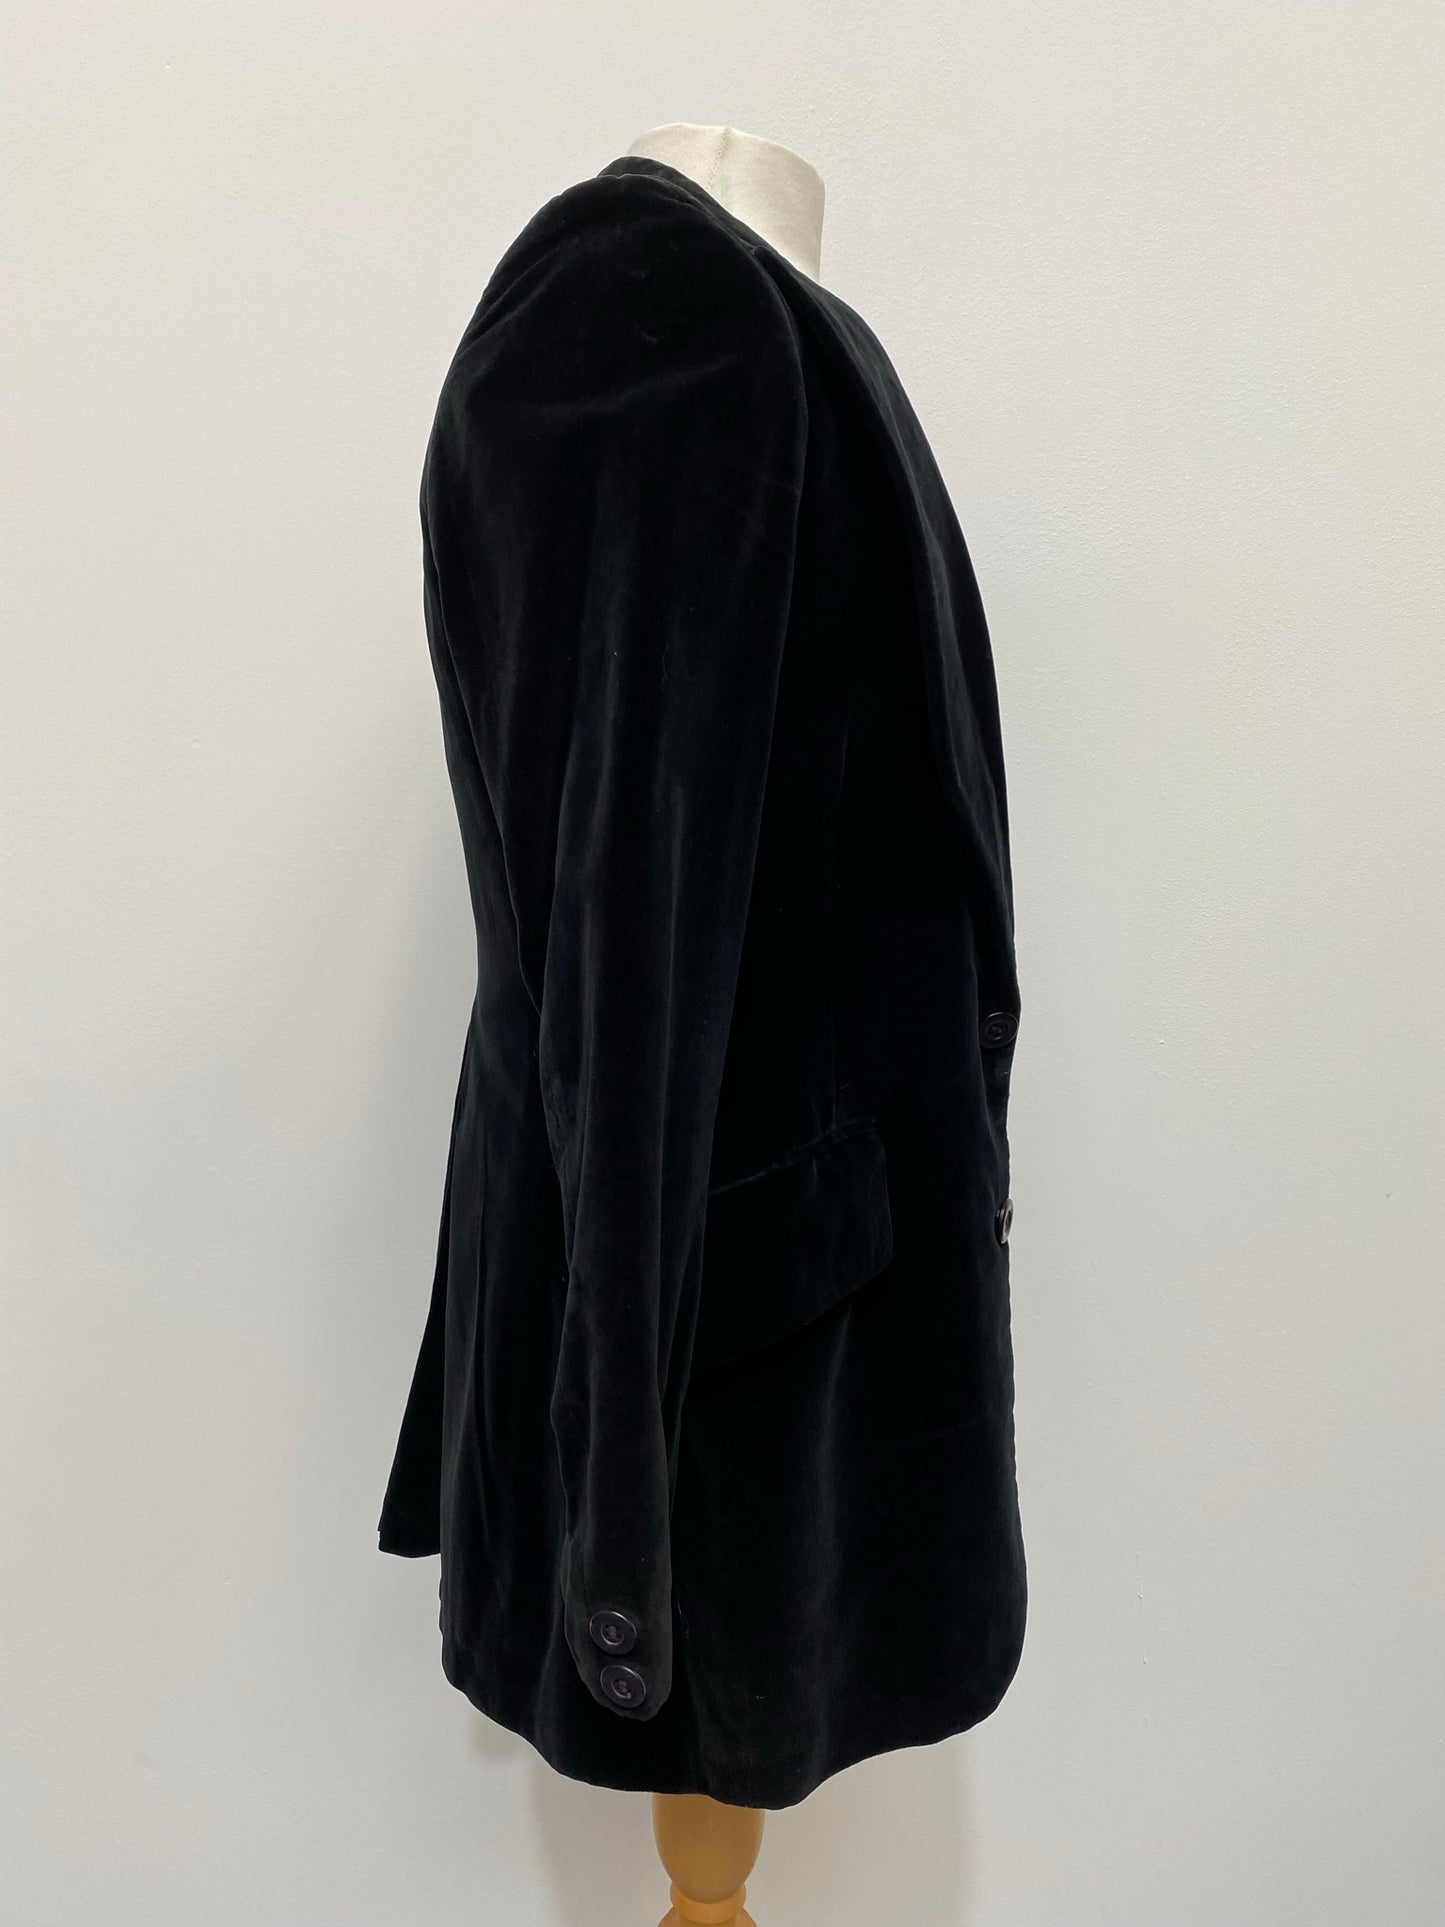 1970s Black Velvet Suit Size Men's Medium / Women's UK 16 - Vintage Clothing